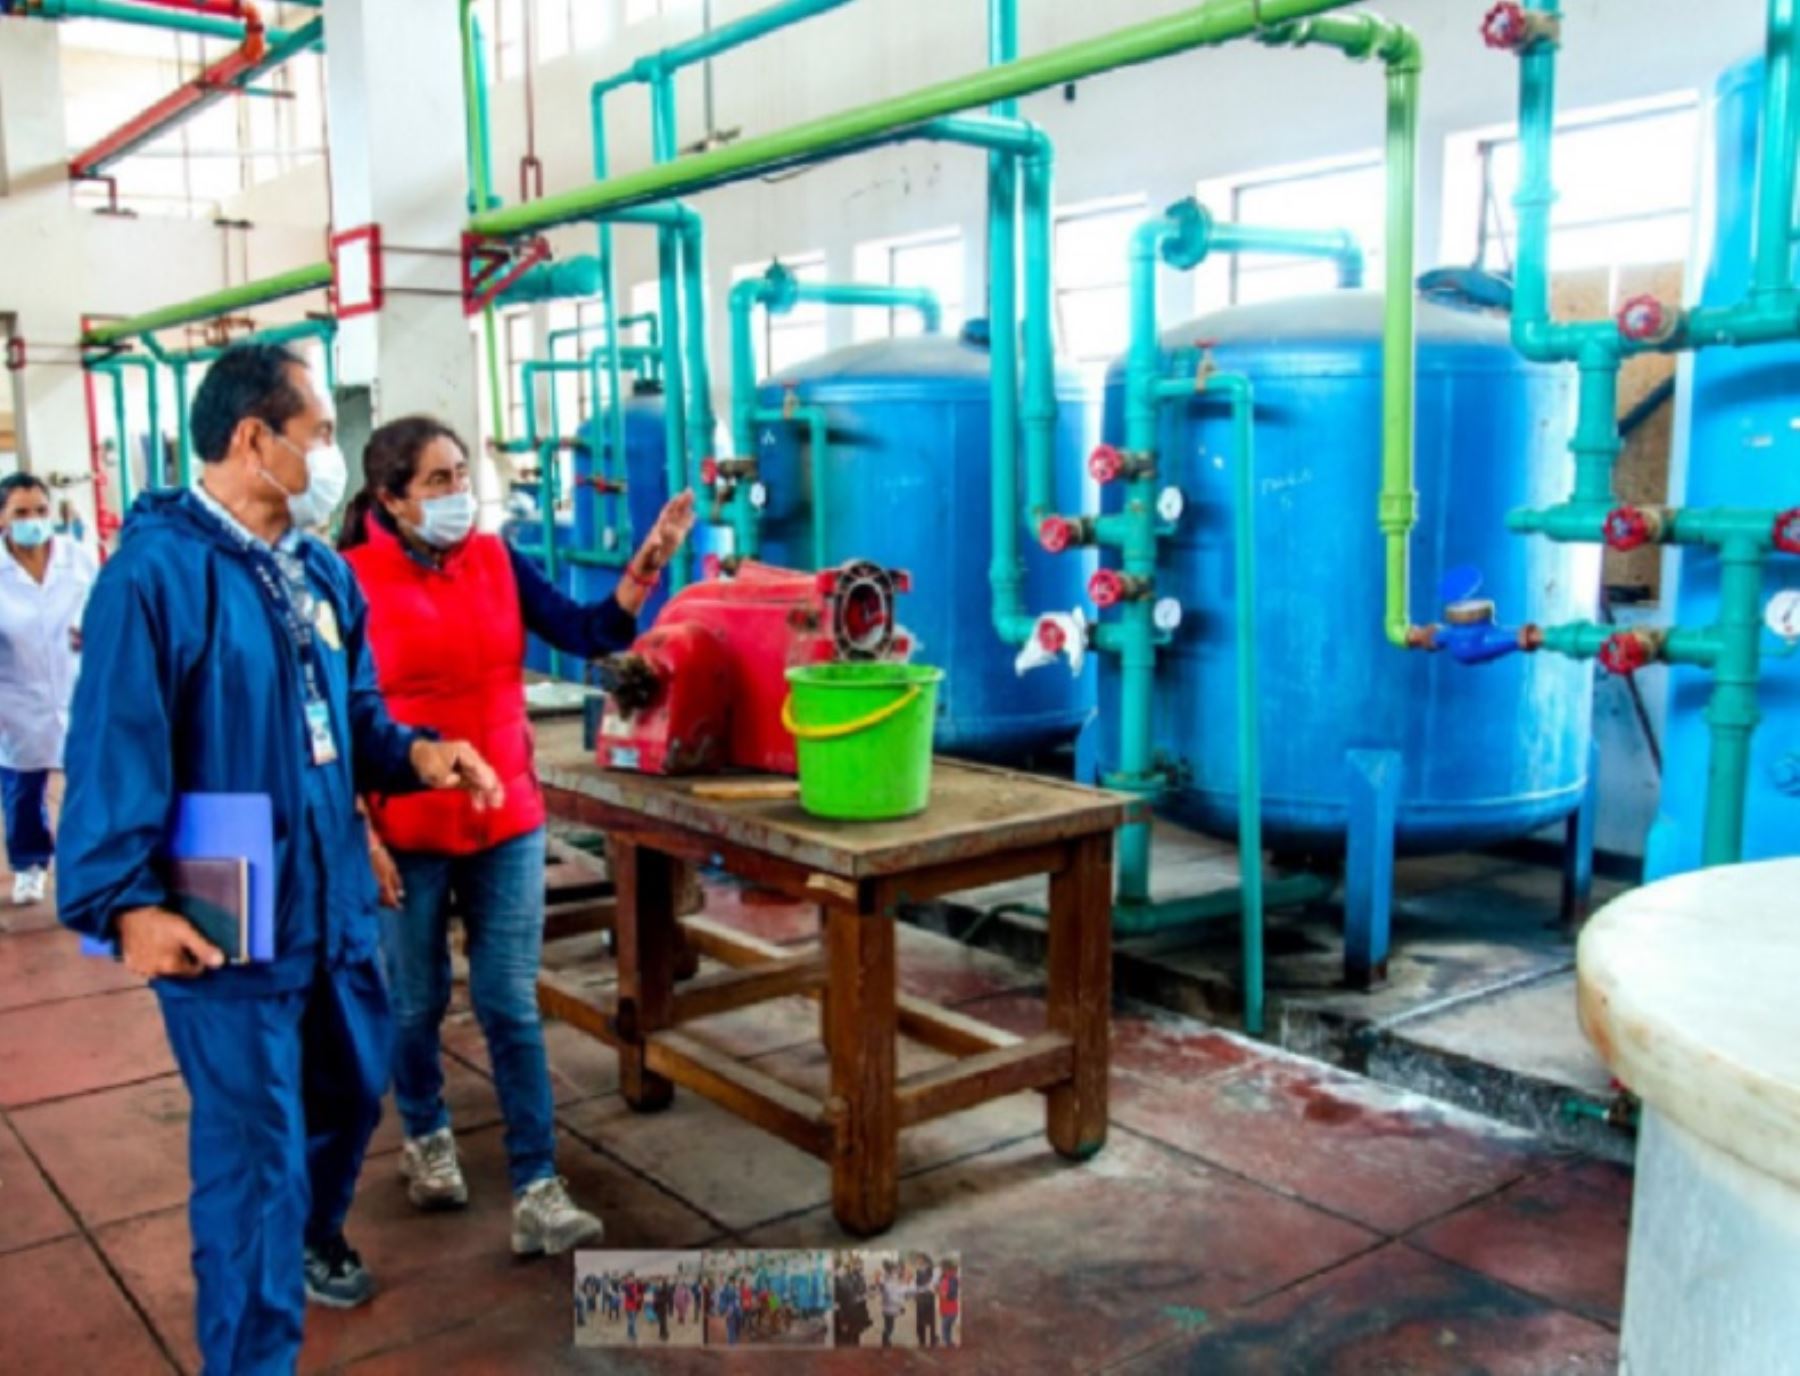 El Gobierno Regional de Áncash inició la instalación de la segunda planta de oxígeno medicinal que funcionará en el hospital regional Eleazar Guzmán Barrón, del distrito de Nuevo Chimbote, la cual abastecerá a toda la zona costa.